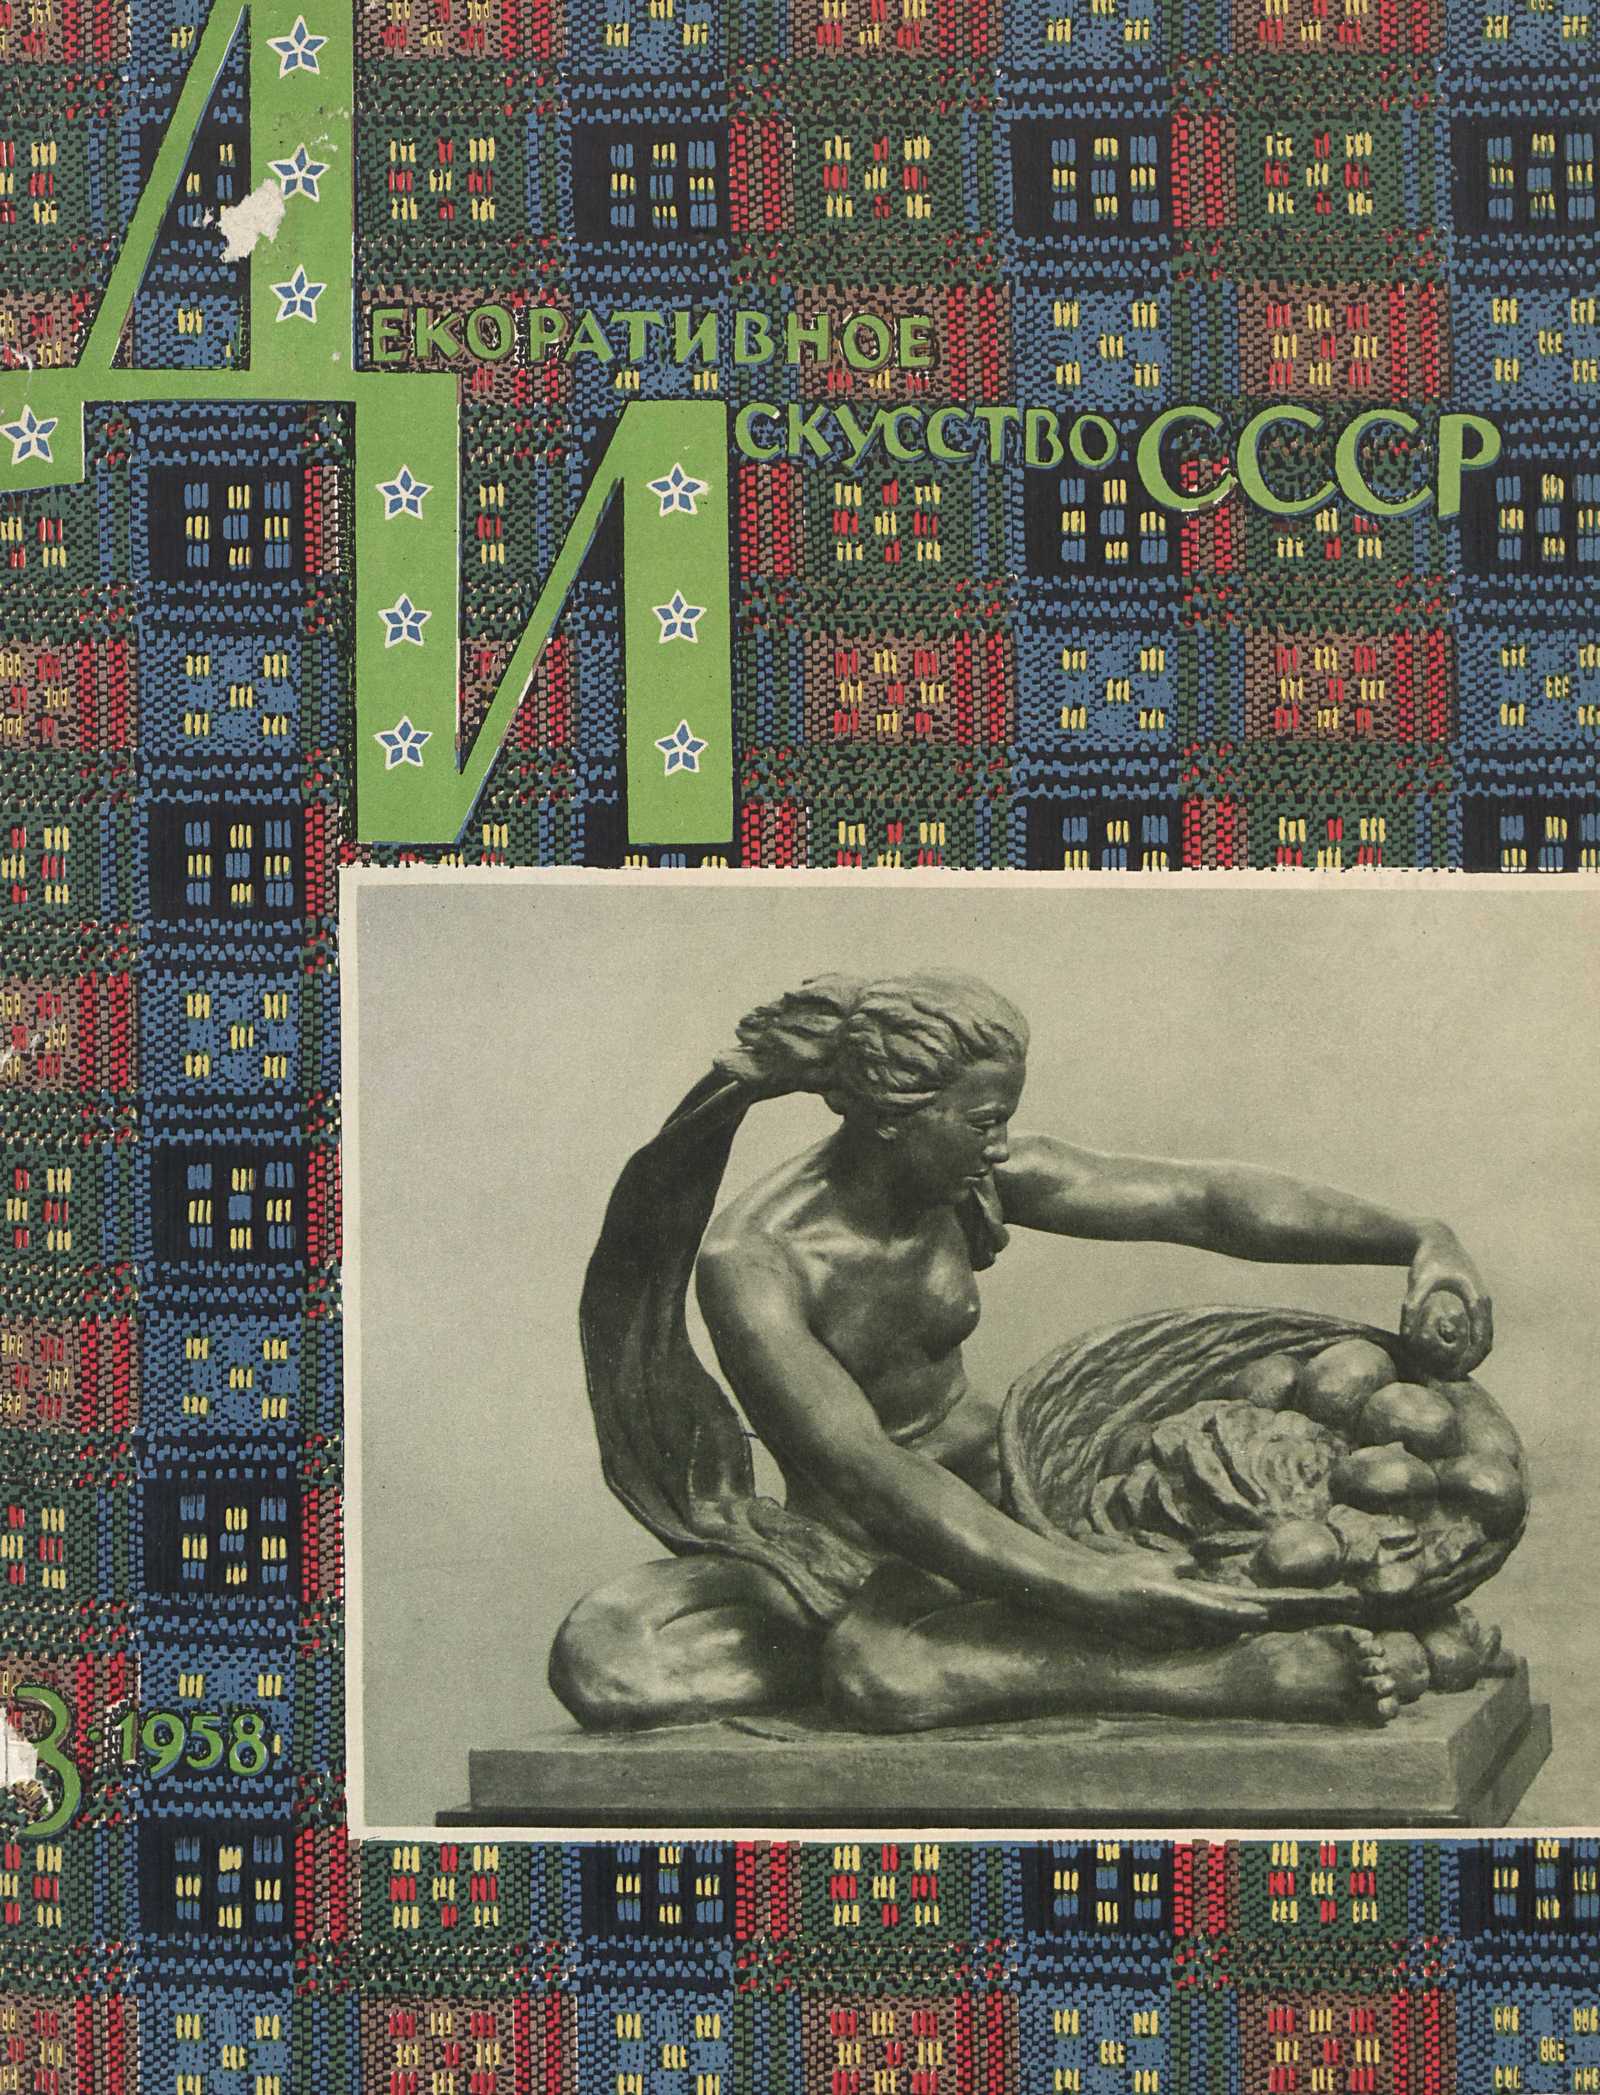 Декоративное искусство СССР 1958. № 3